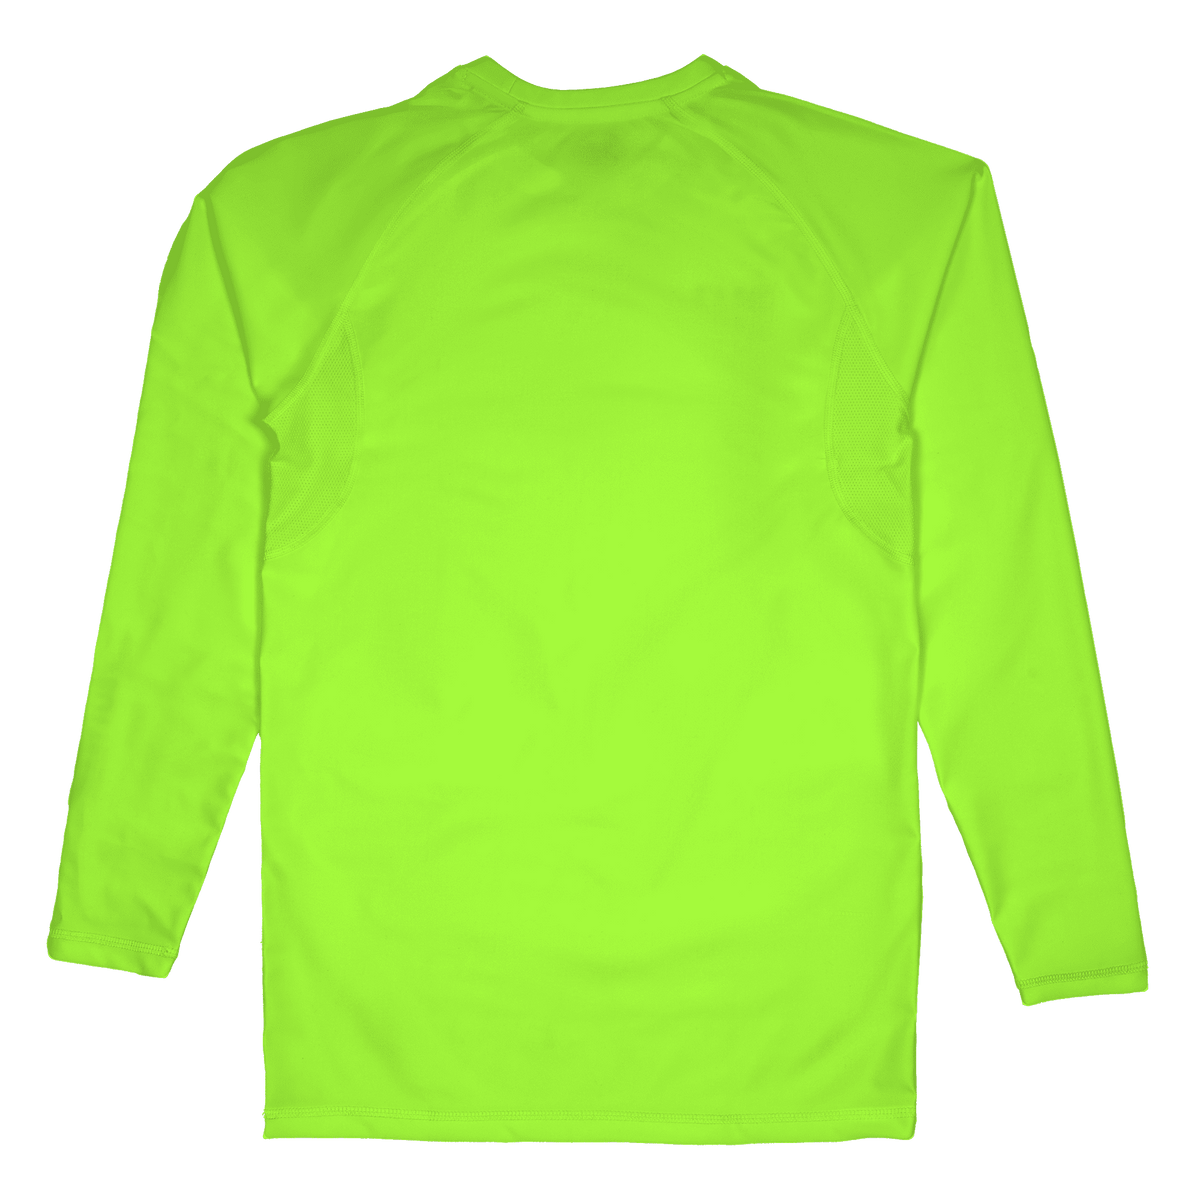 Koszulka kompresyjna BU1 w kolorze neonowej zieleni